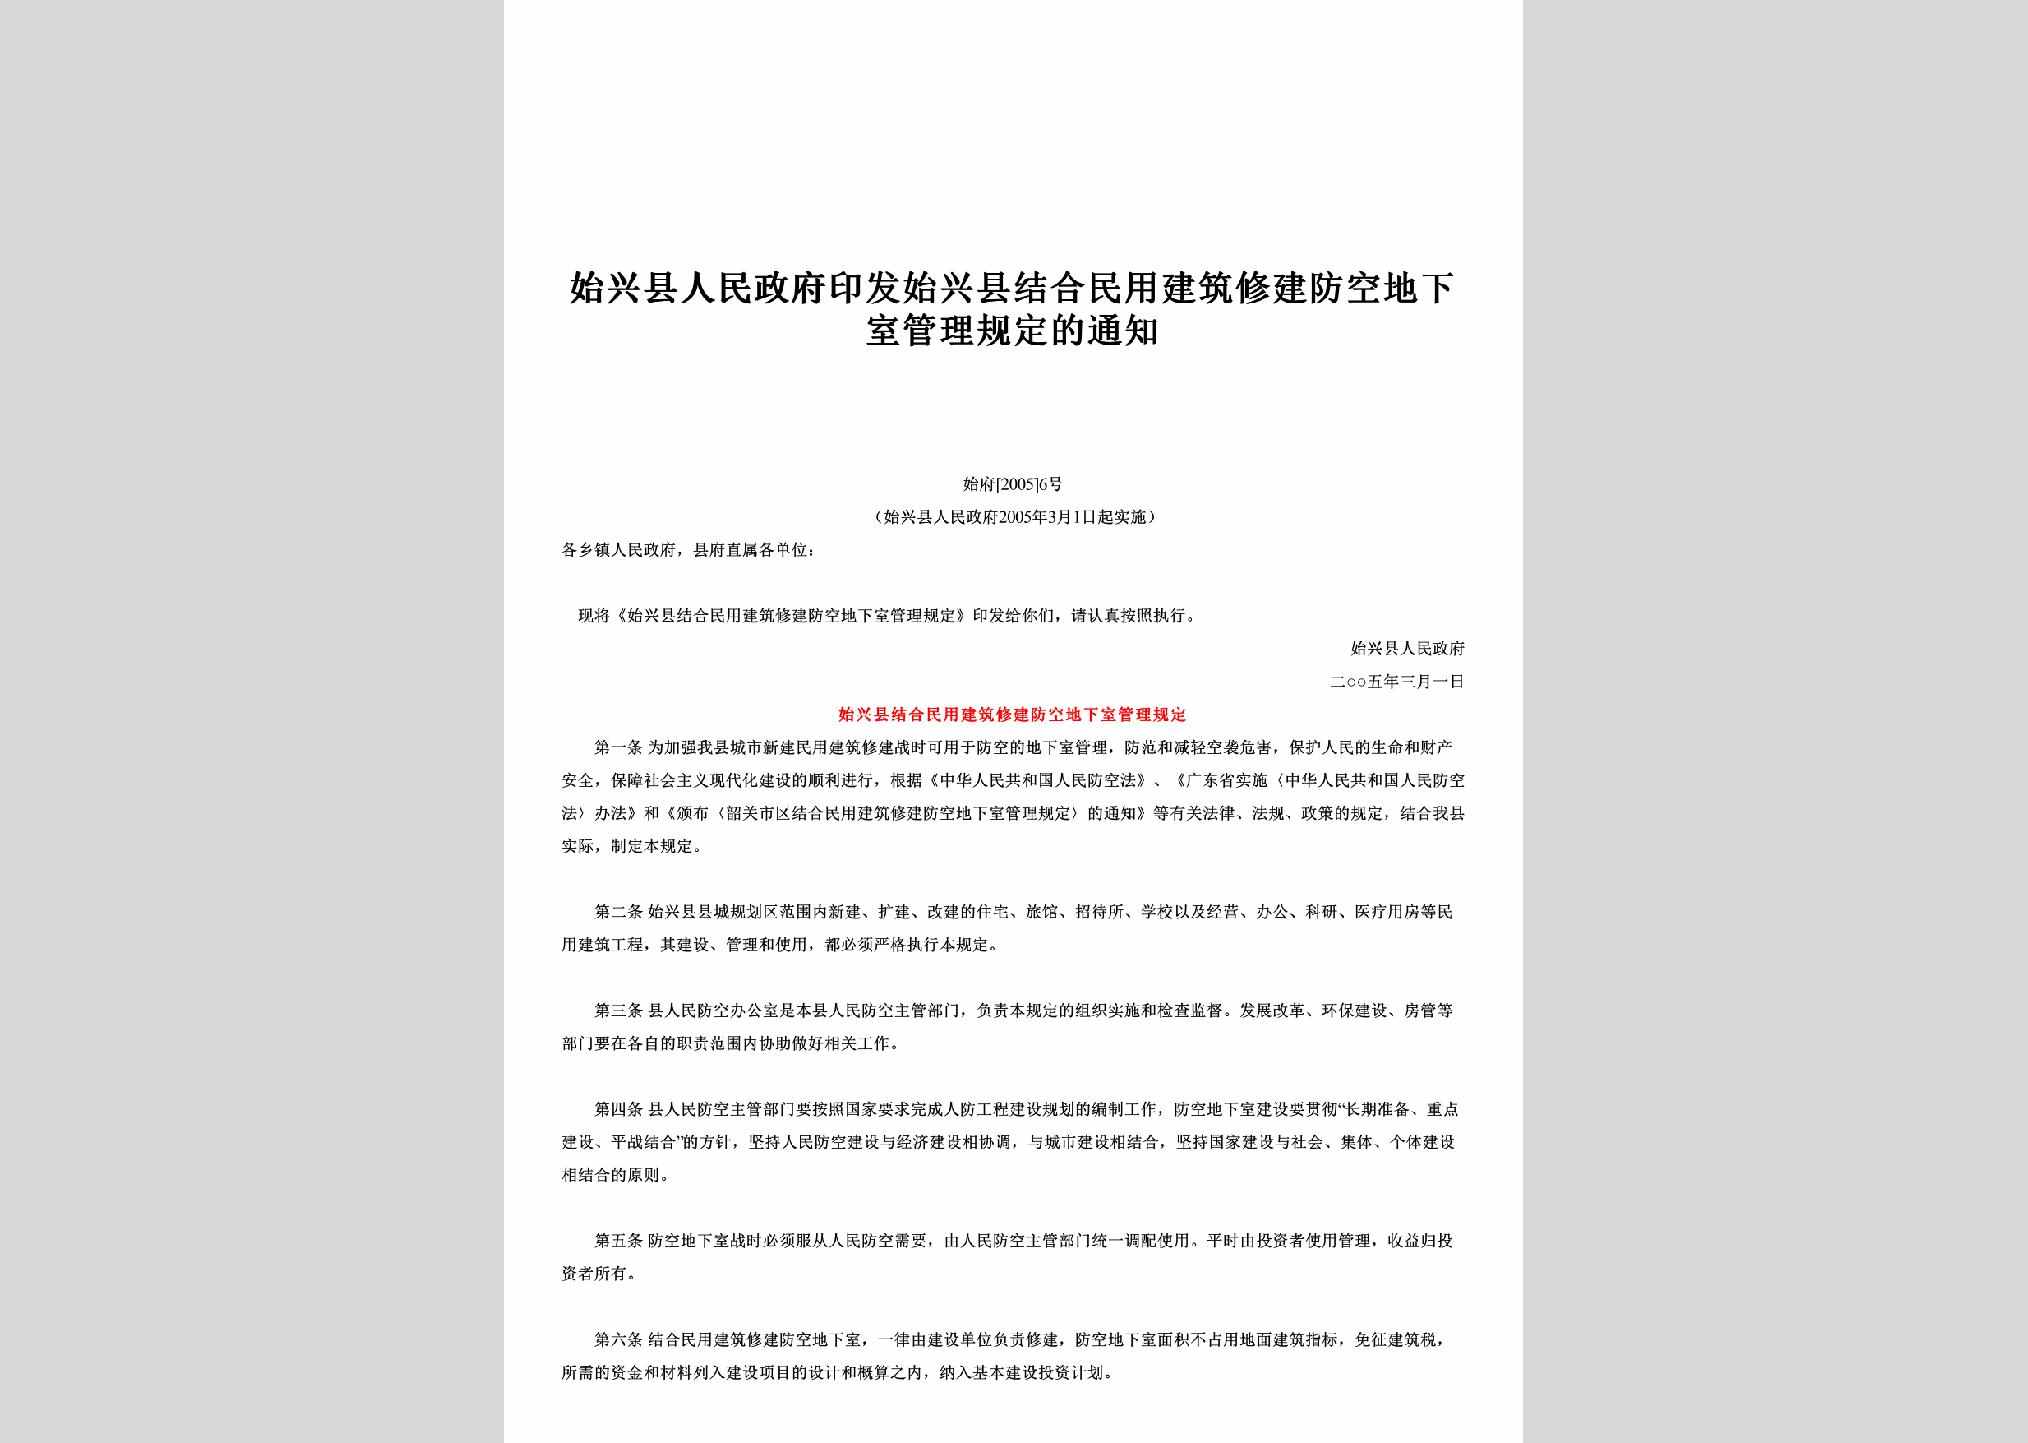 始府[2005]6号：印发始兴县结合民用建筑修建防空地下室管理规定的通知